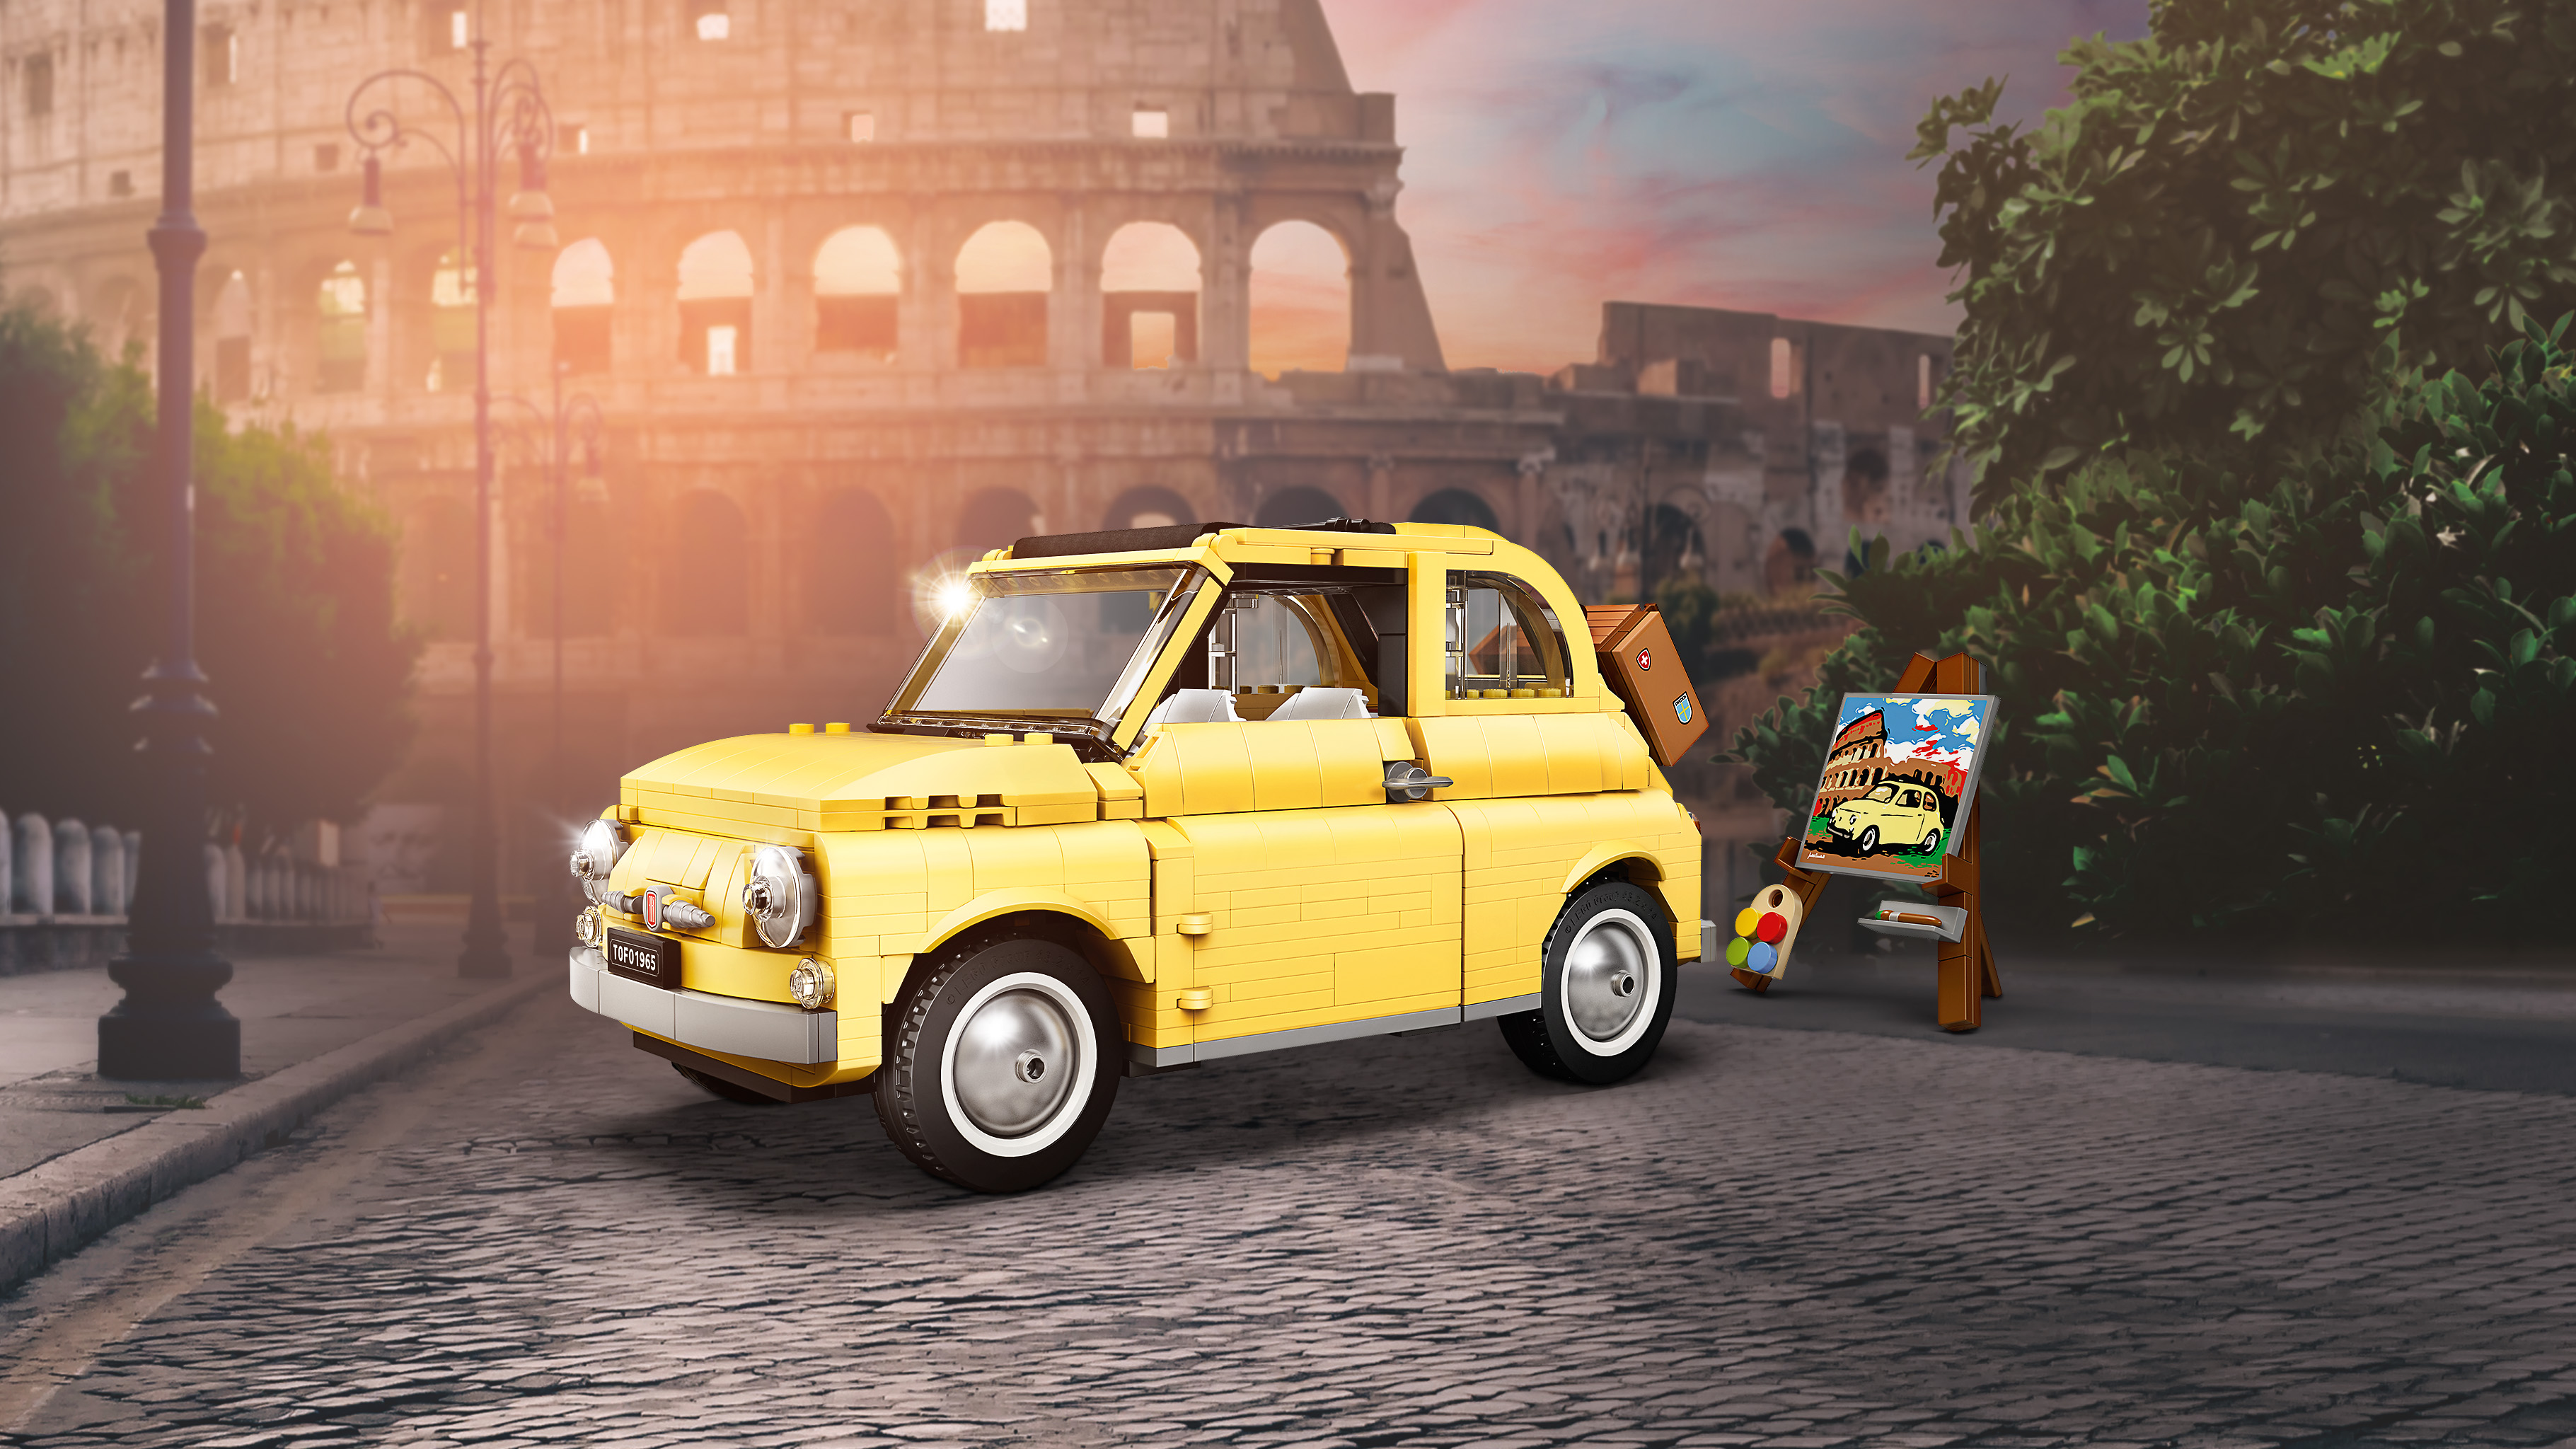 イタリアの名車をレゴブロックで再現 映画 甘い生活 の名場面がよみがえる レゴ クリエイター エキスパート フィアット 500 レゴ ジャパン株式会社のプレスリリース